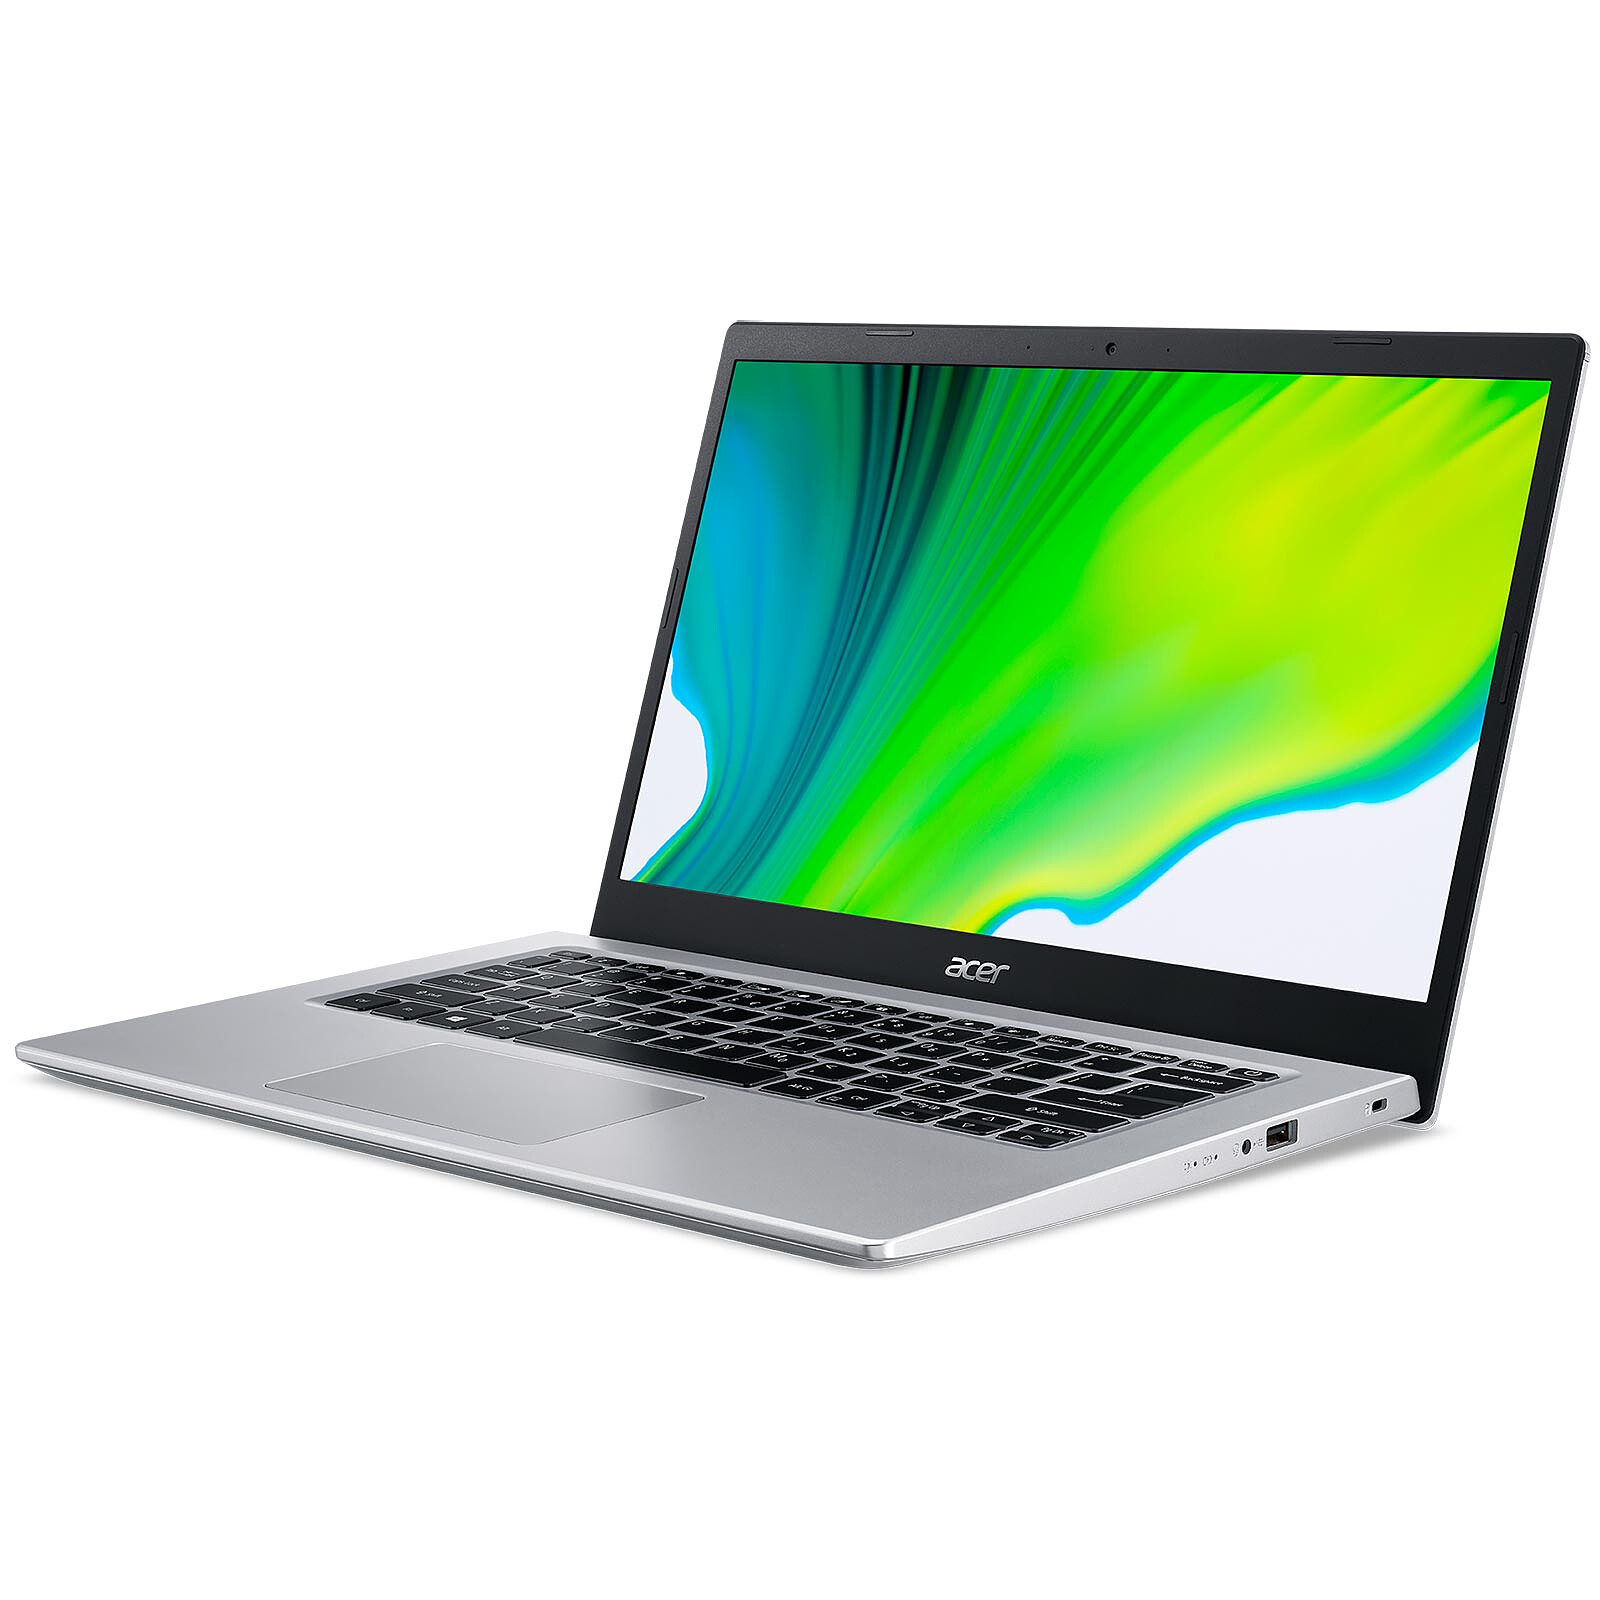 Acer Aspire 5 A514-54-349E - PC portable - Garantie 3 ans LDLC